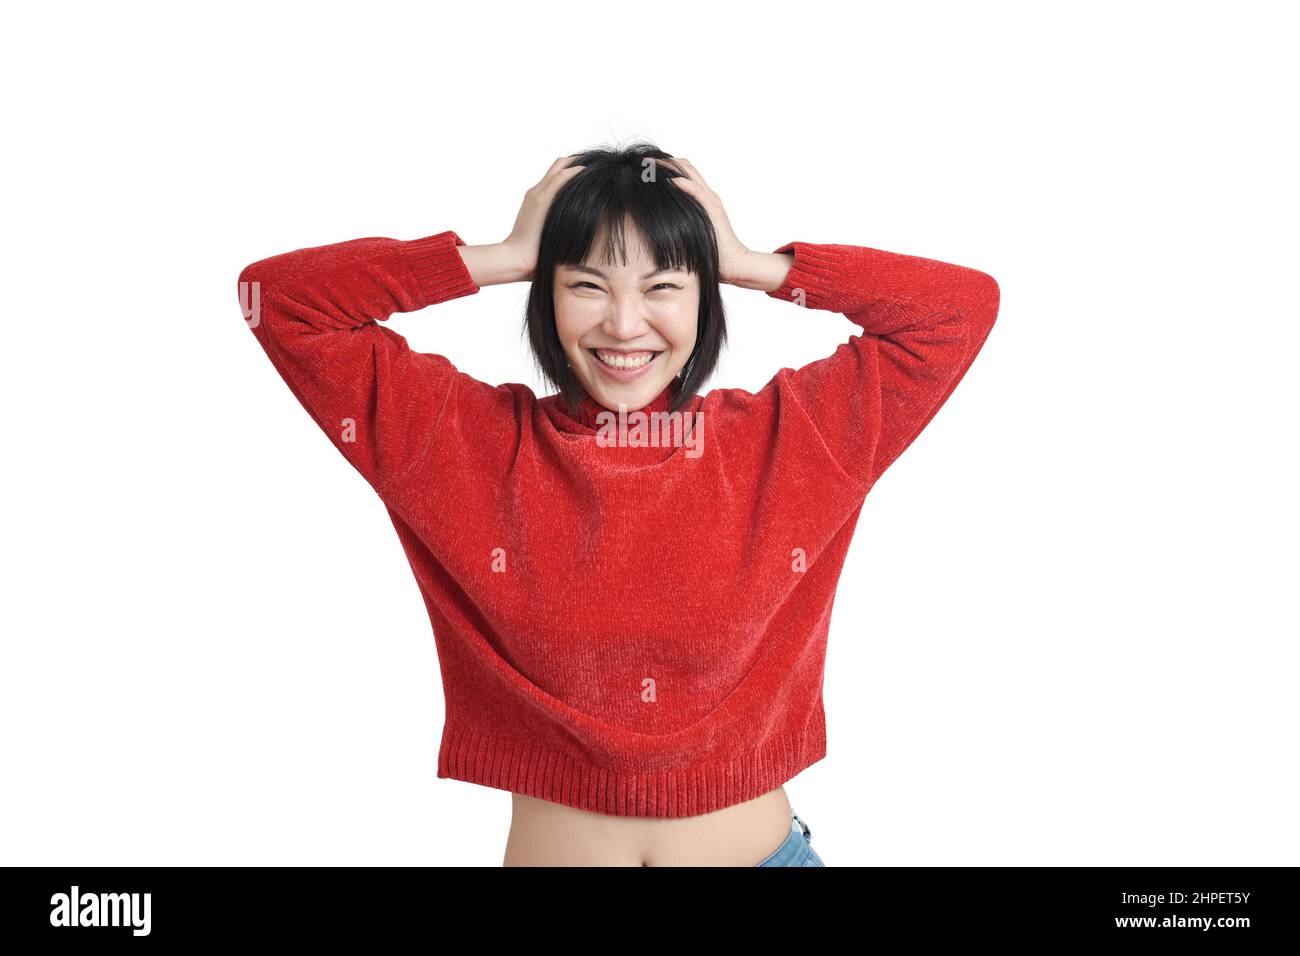 Junge asiatische Frau lachend und berührt ihren Kopf mit ihren Händen, isoliert. Stockfoto